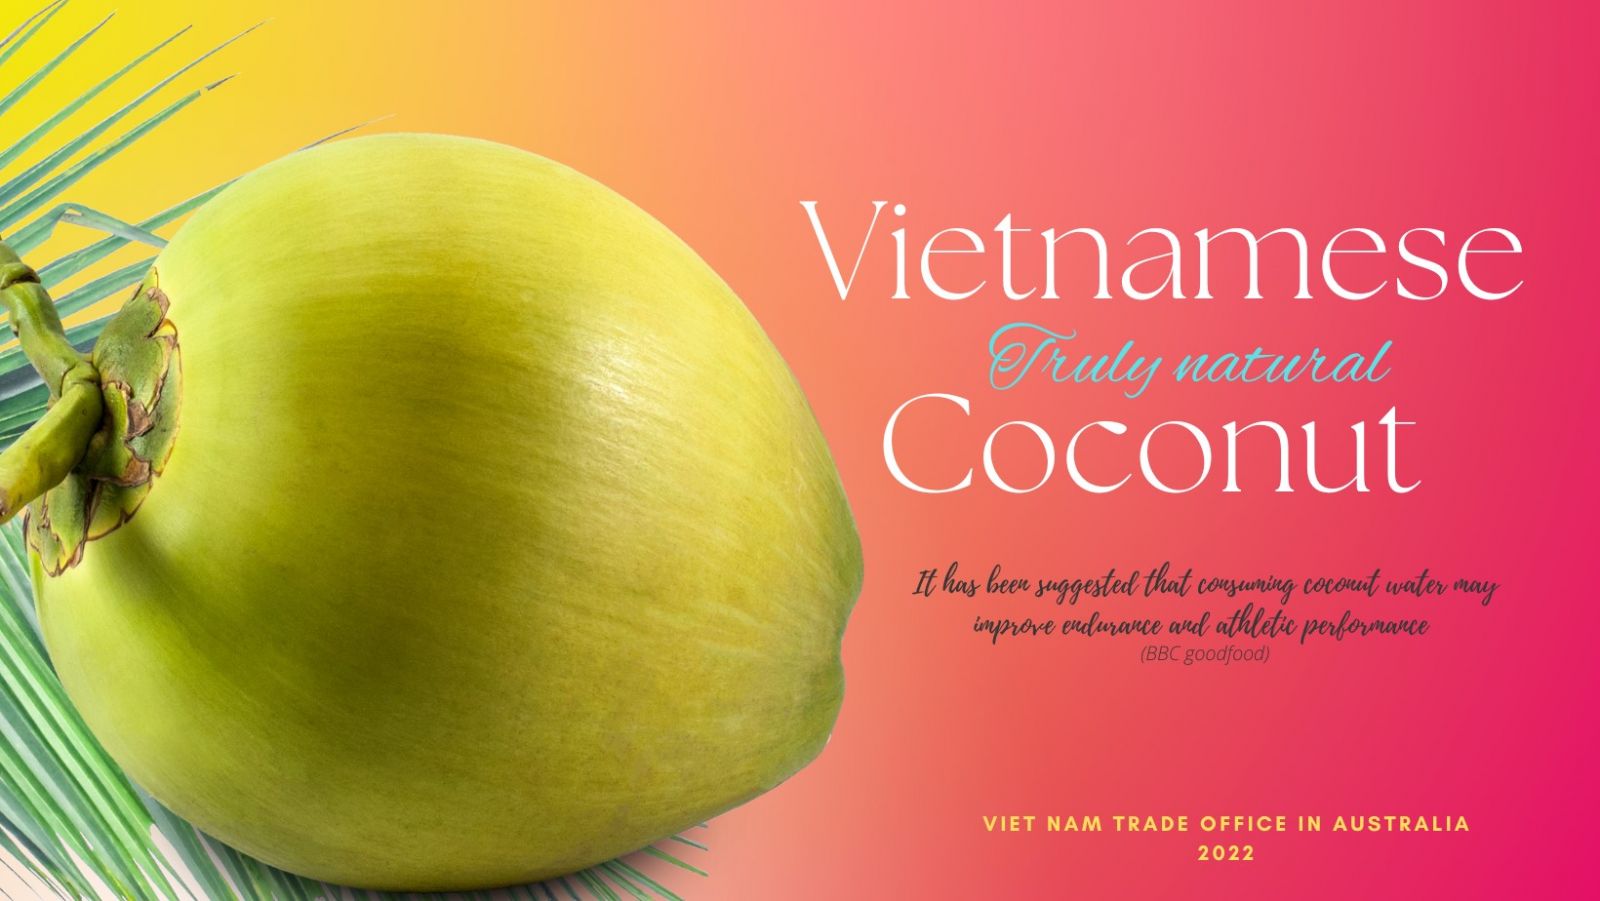 Nước dừa Việt Nam được đưa vào các siêu thị lớn nhất tại Australia - Ảnh 1.